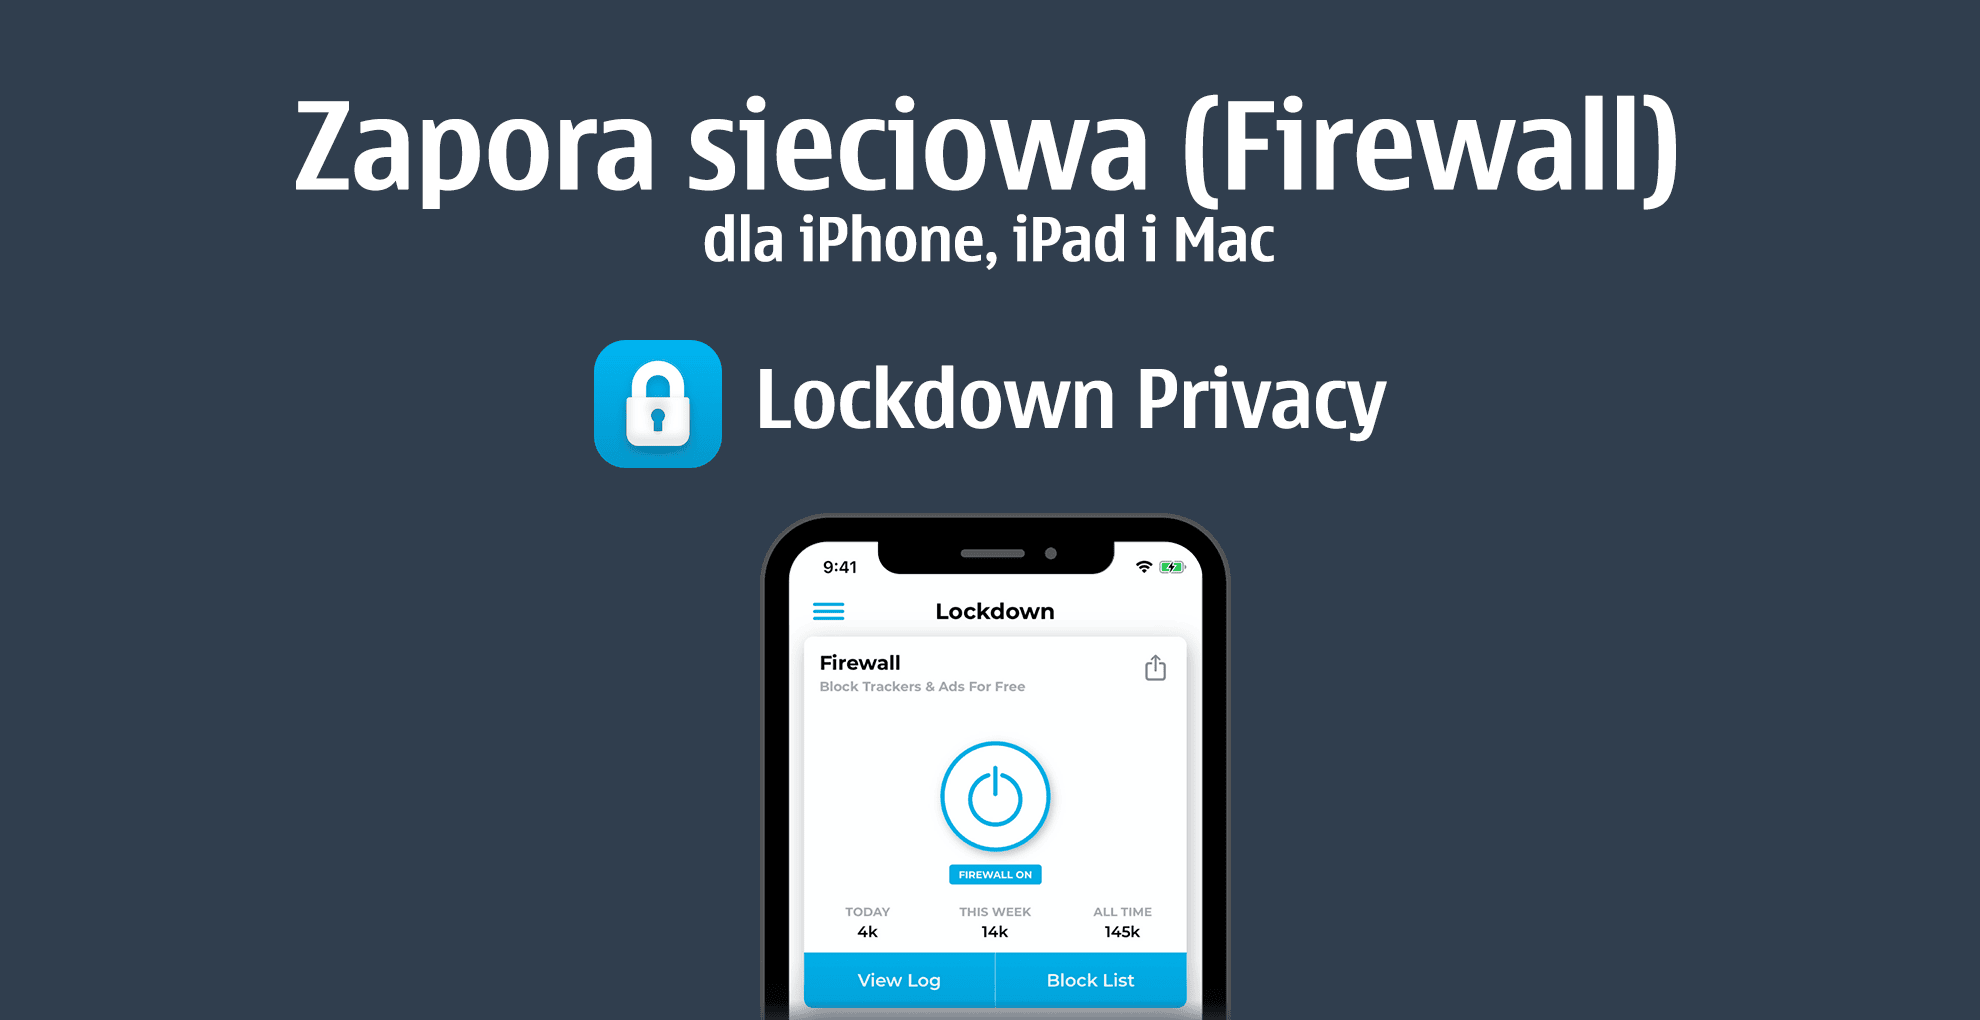 Zapora sieciowa (Firewall) dla iPhone, iPad i Mac - Lockdown Privacy